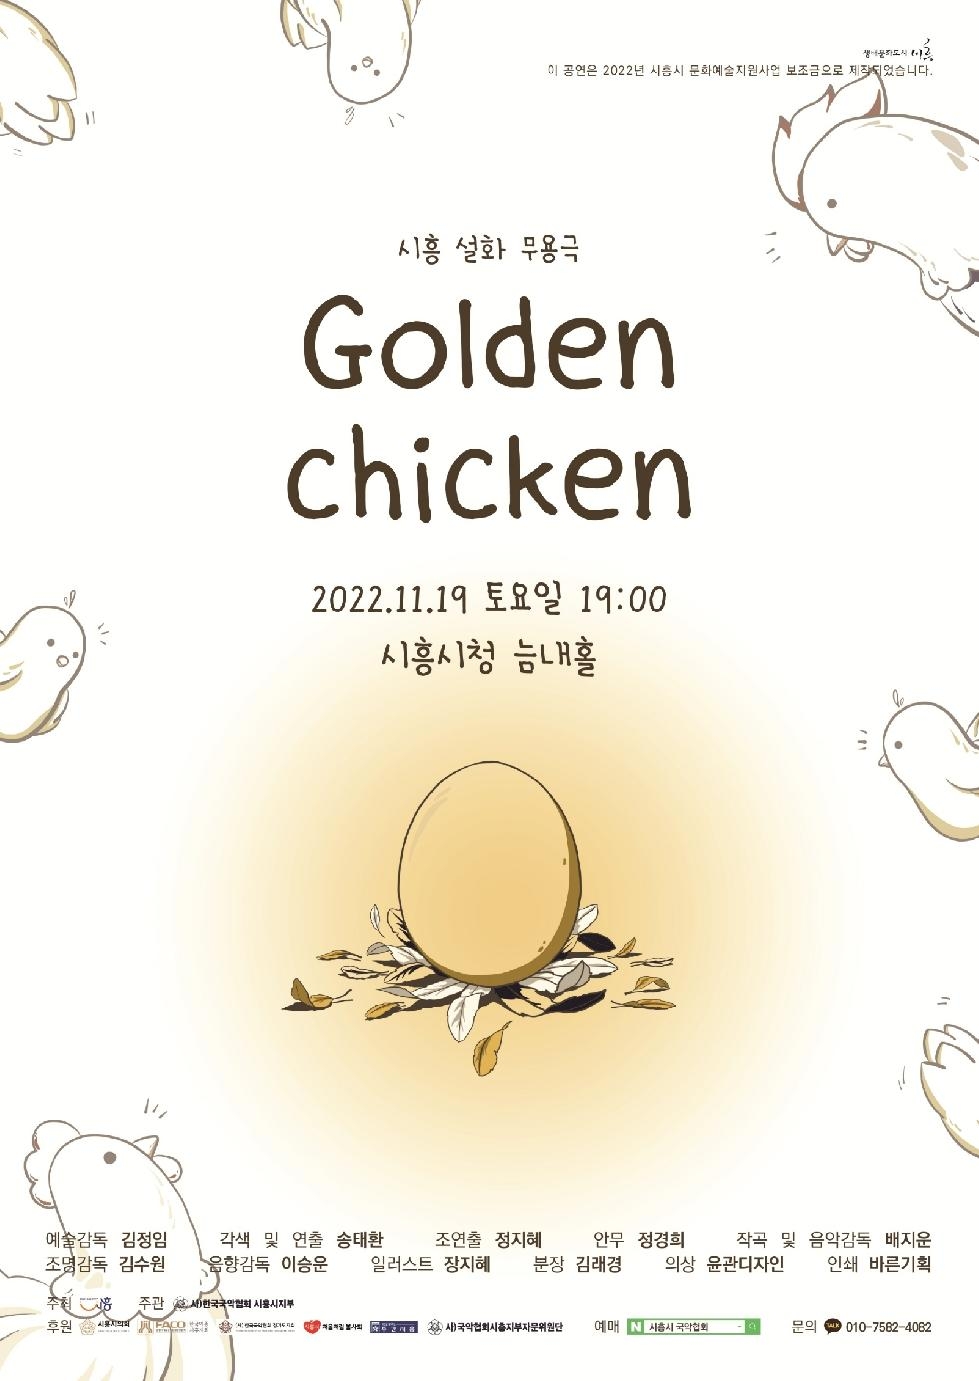 시흥설화 창작무용극 [Golden Chicken] 공연, 19일 개최